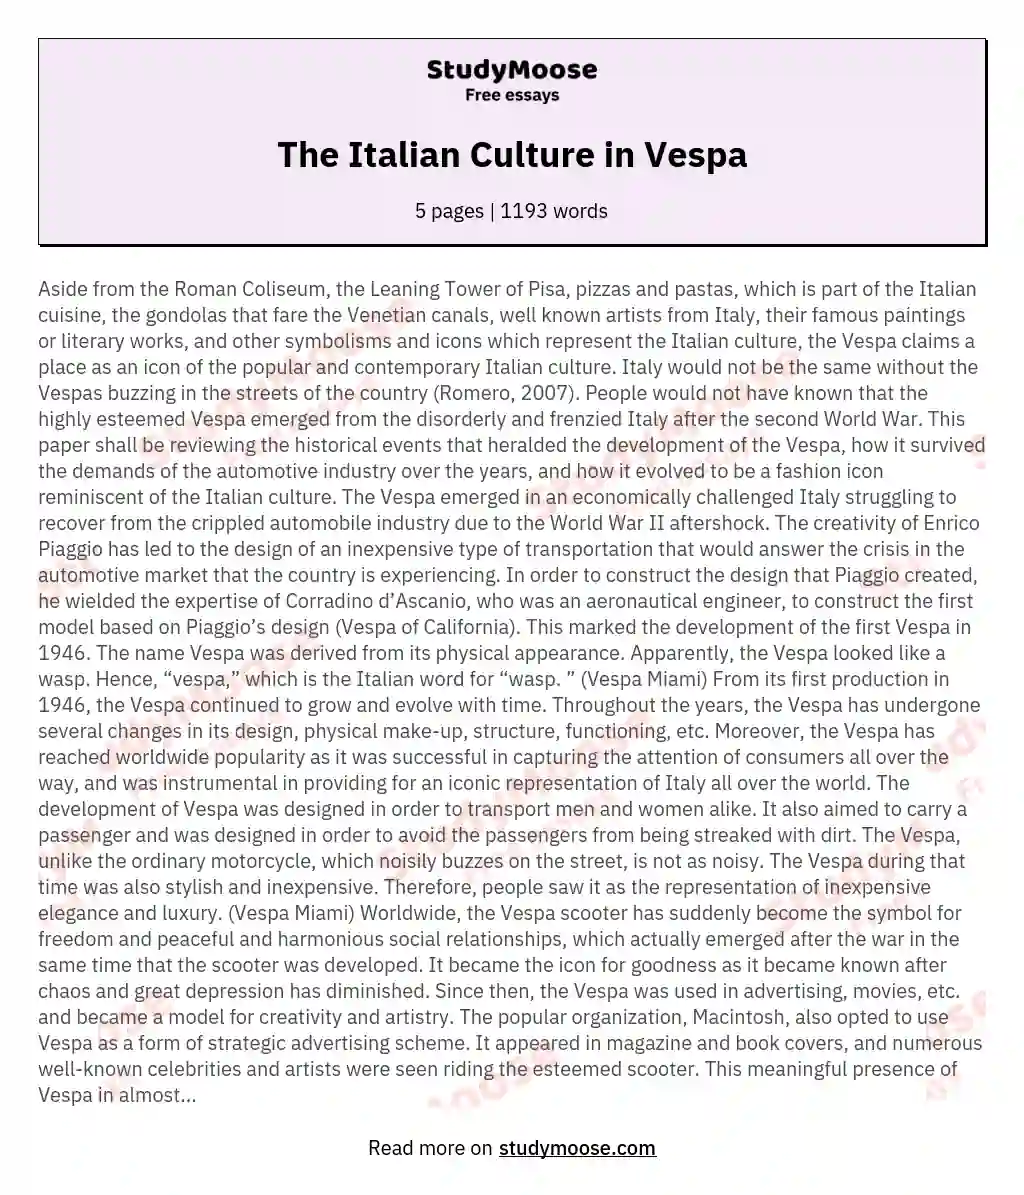 The Italian Culture in Vespa essay